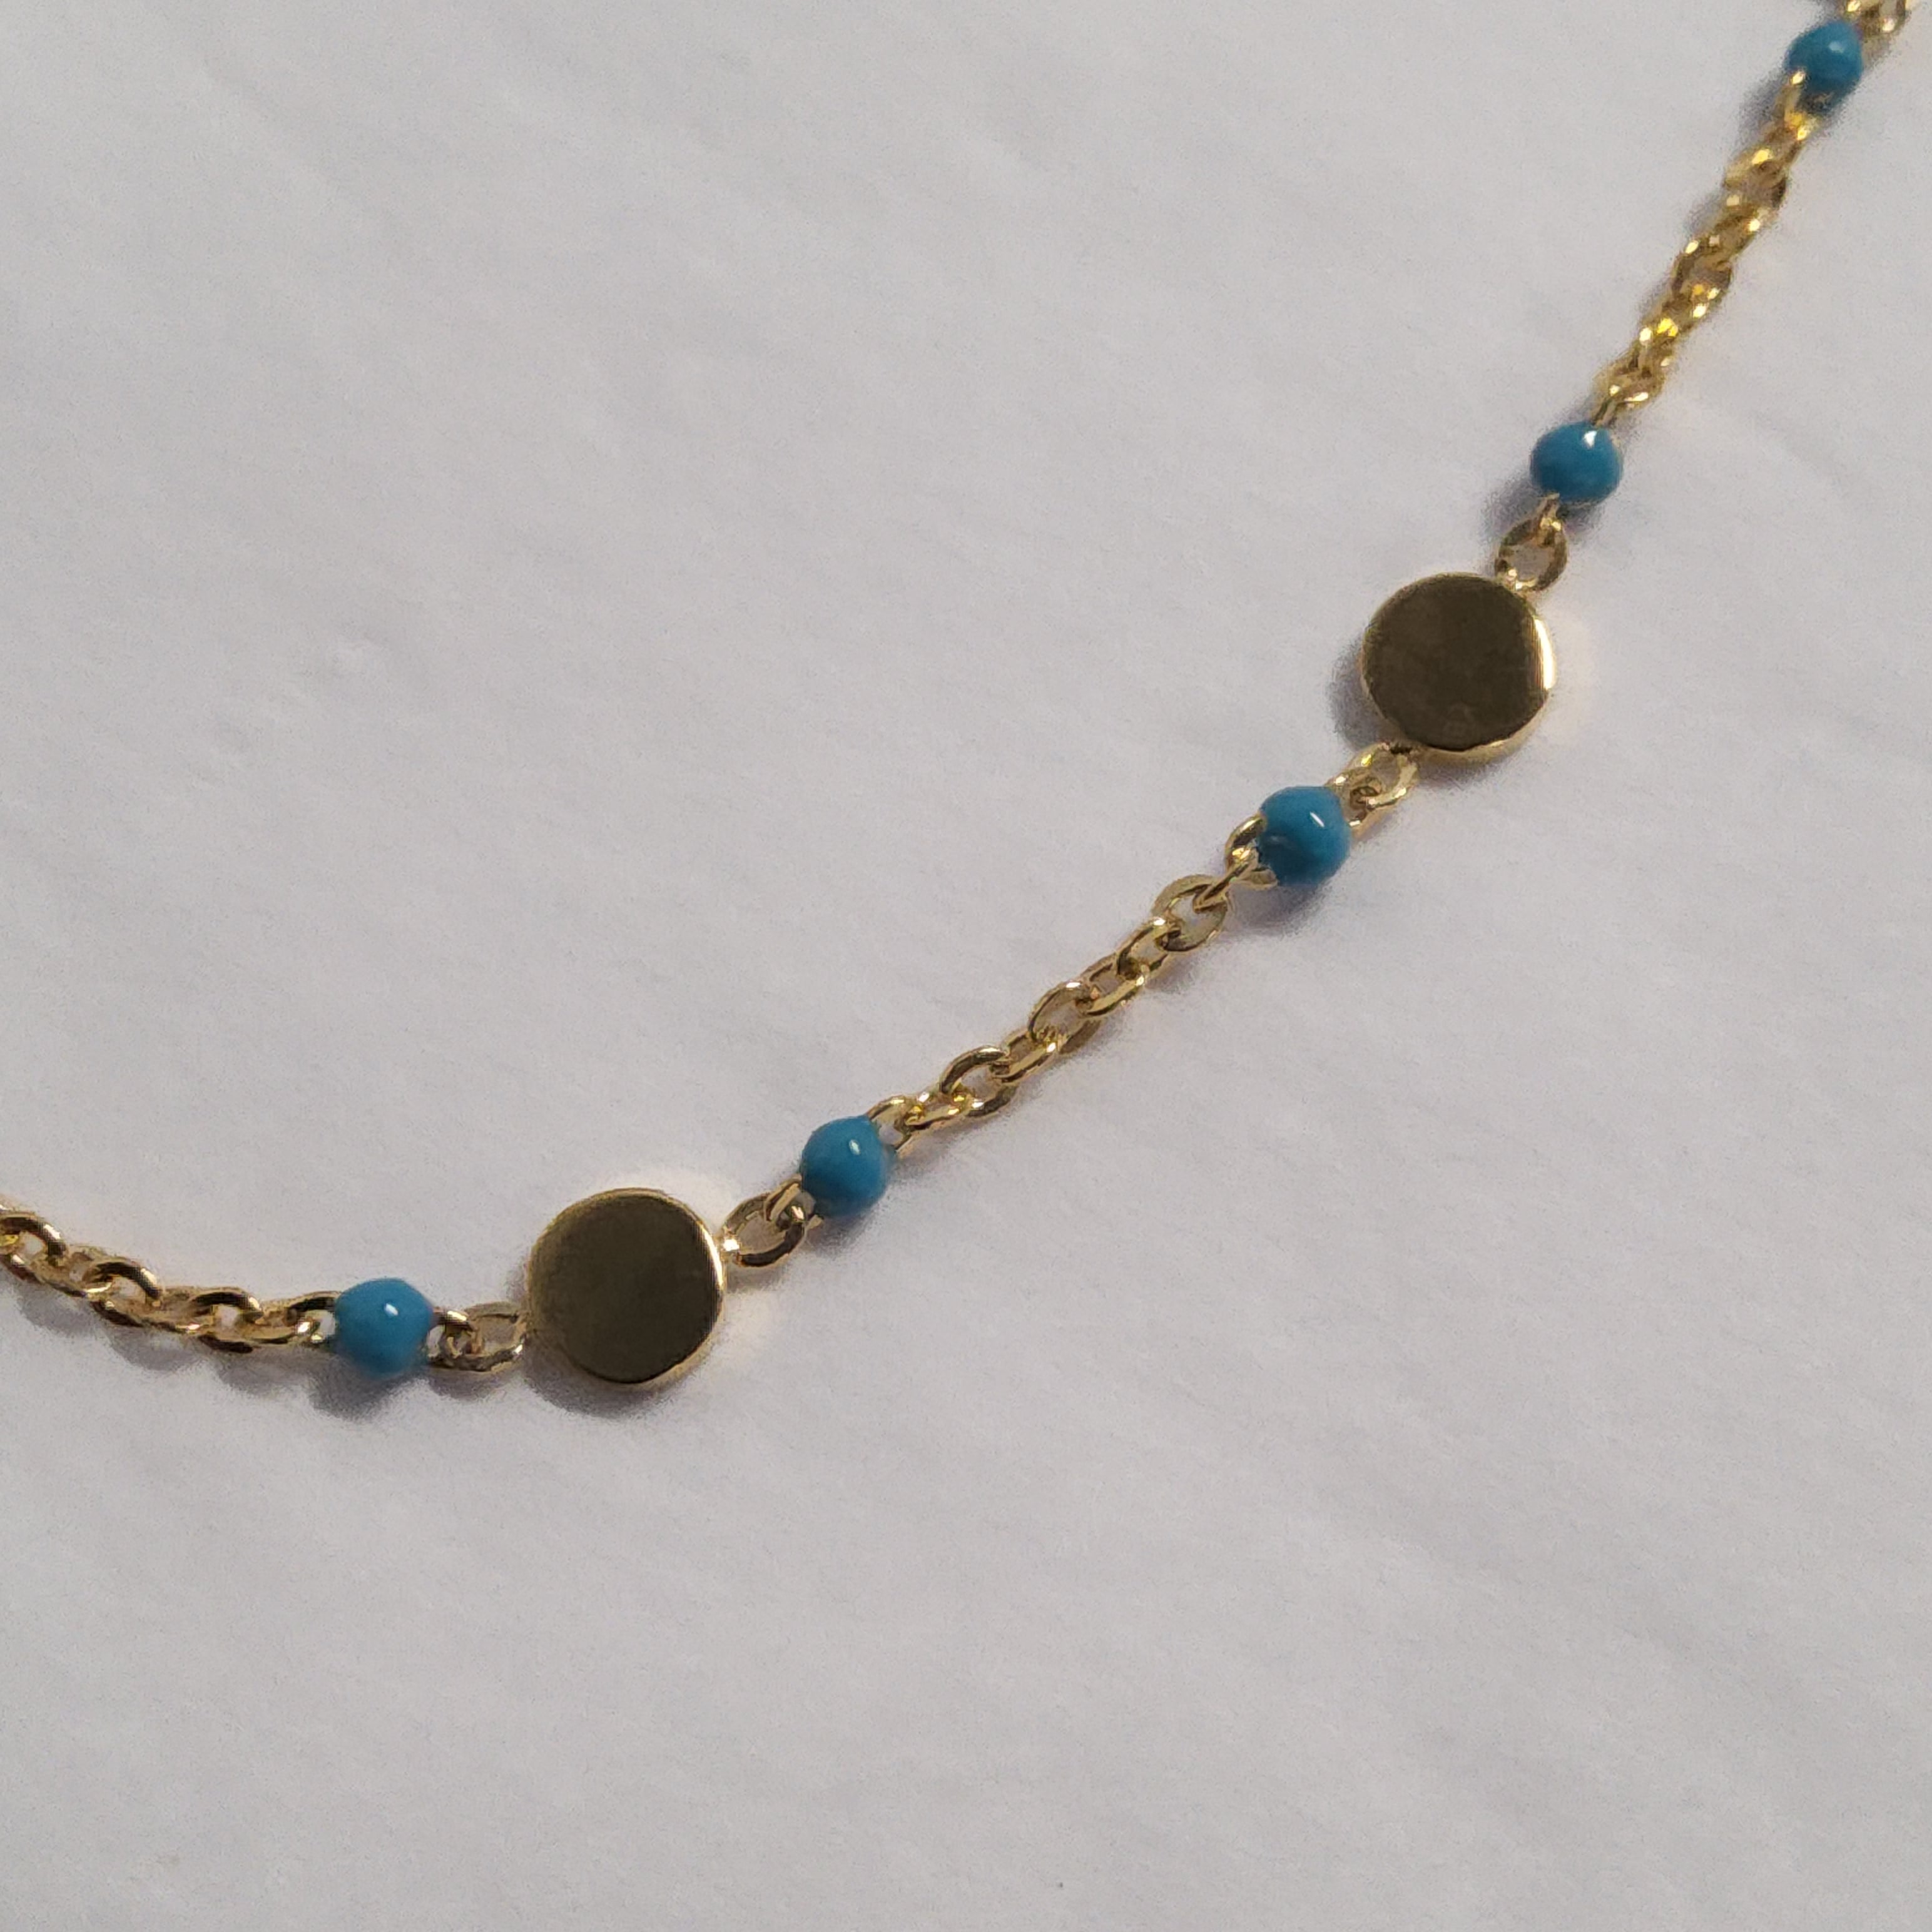 STEELX S/SBracelet - Blue Beads with Discs - 7 + 1 inch